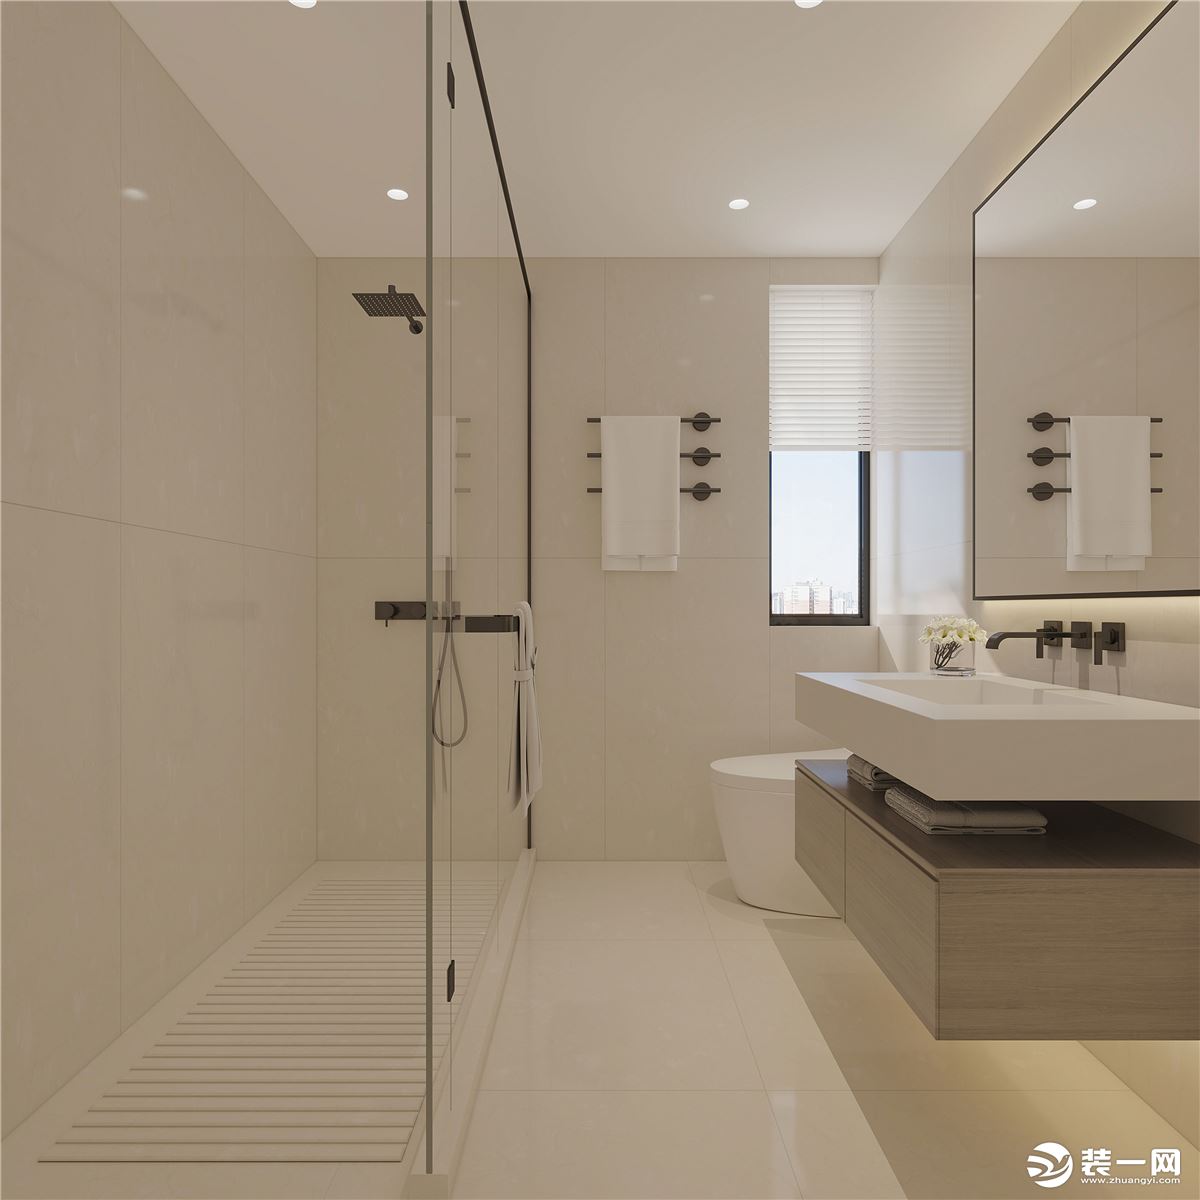 卫生间整体设计风格用简约的线条，灵活通透的设计打造精致实用的温馨小家。